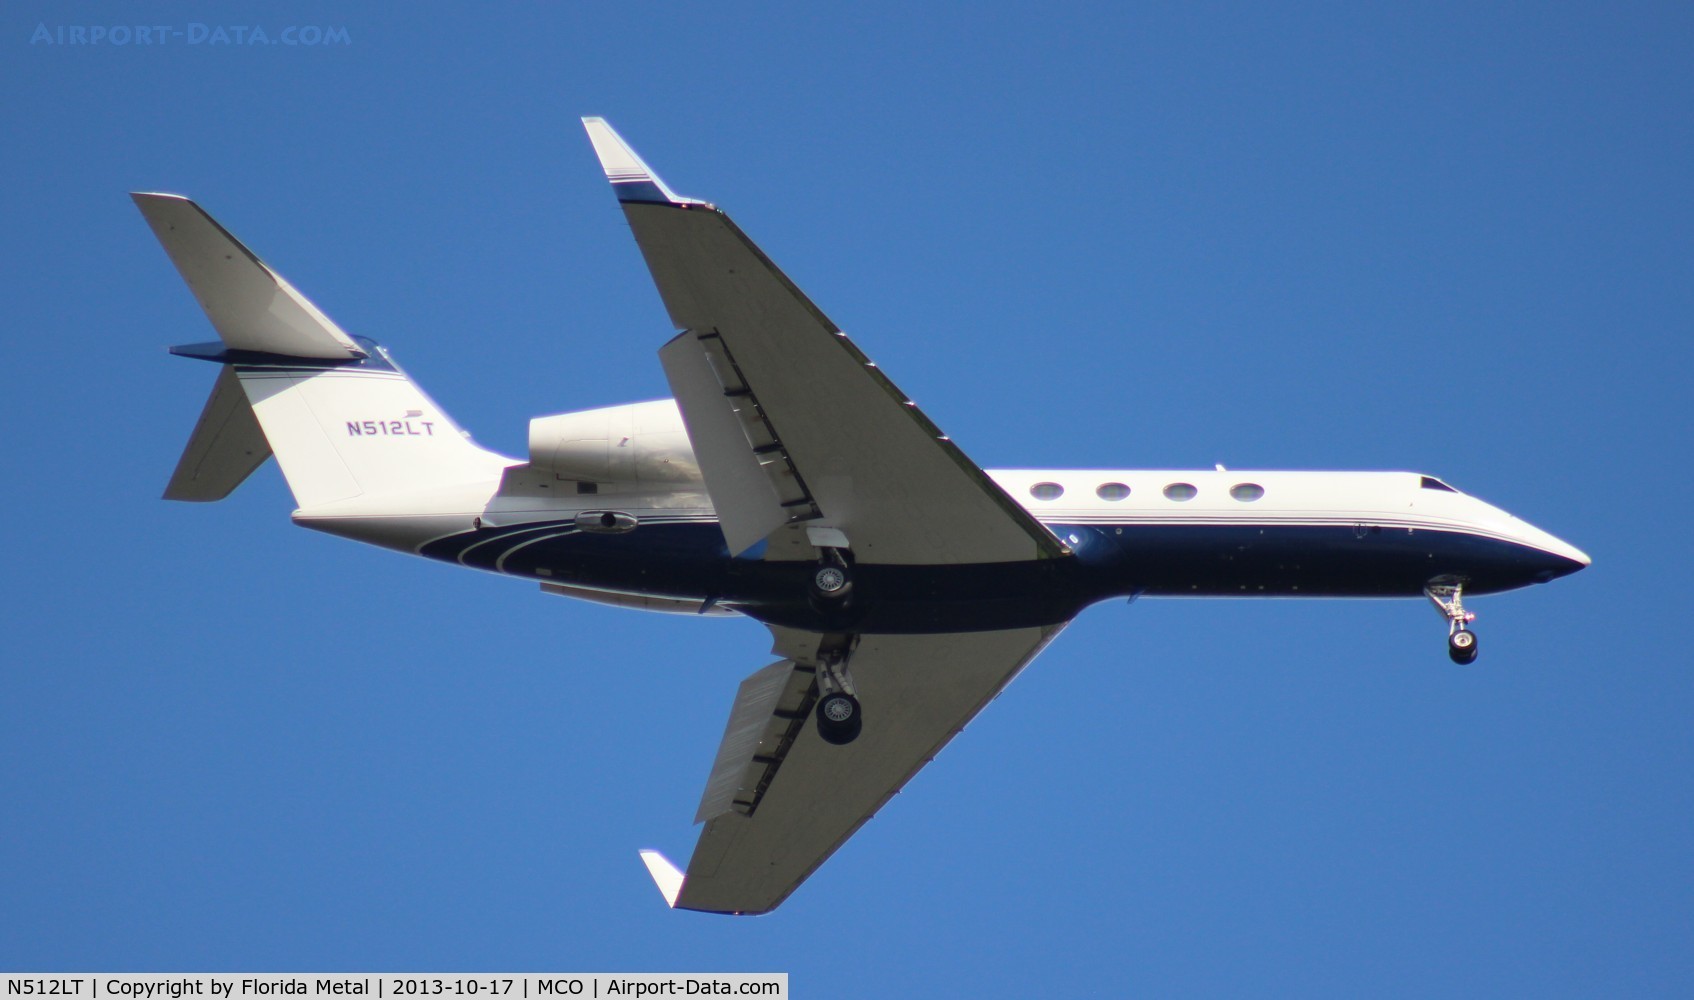 N512LT, 2004 Gulfstream Aerospace GIV-X (G450) C/N 4005, Gulfstream 450